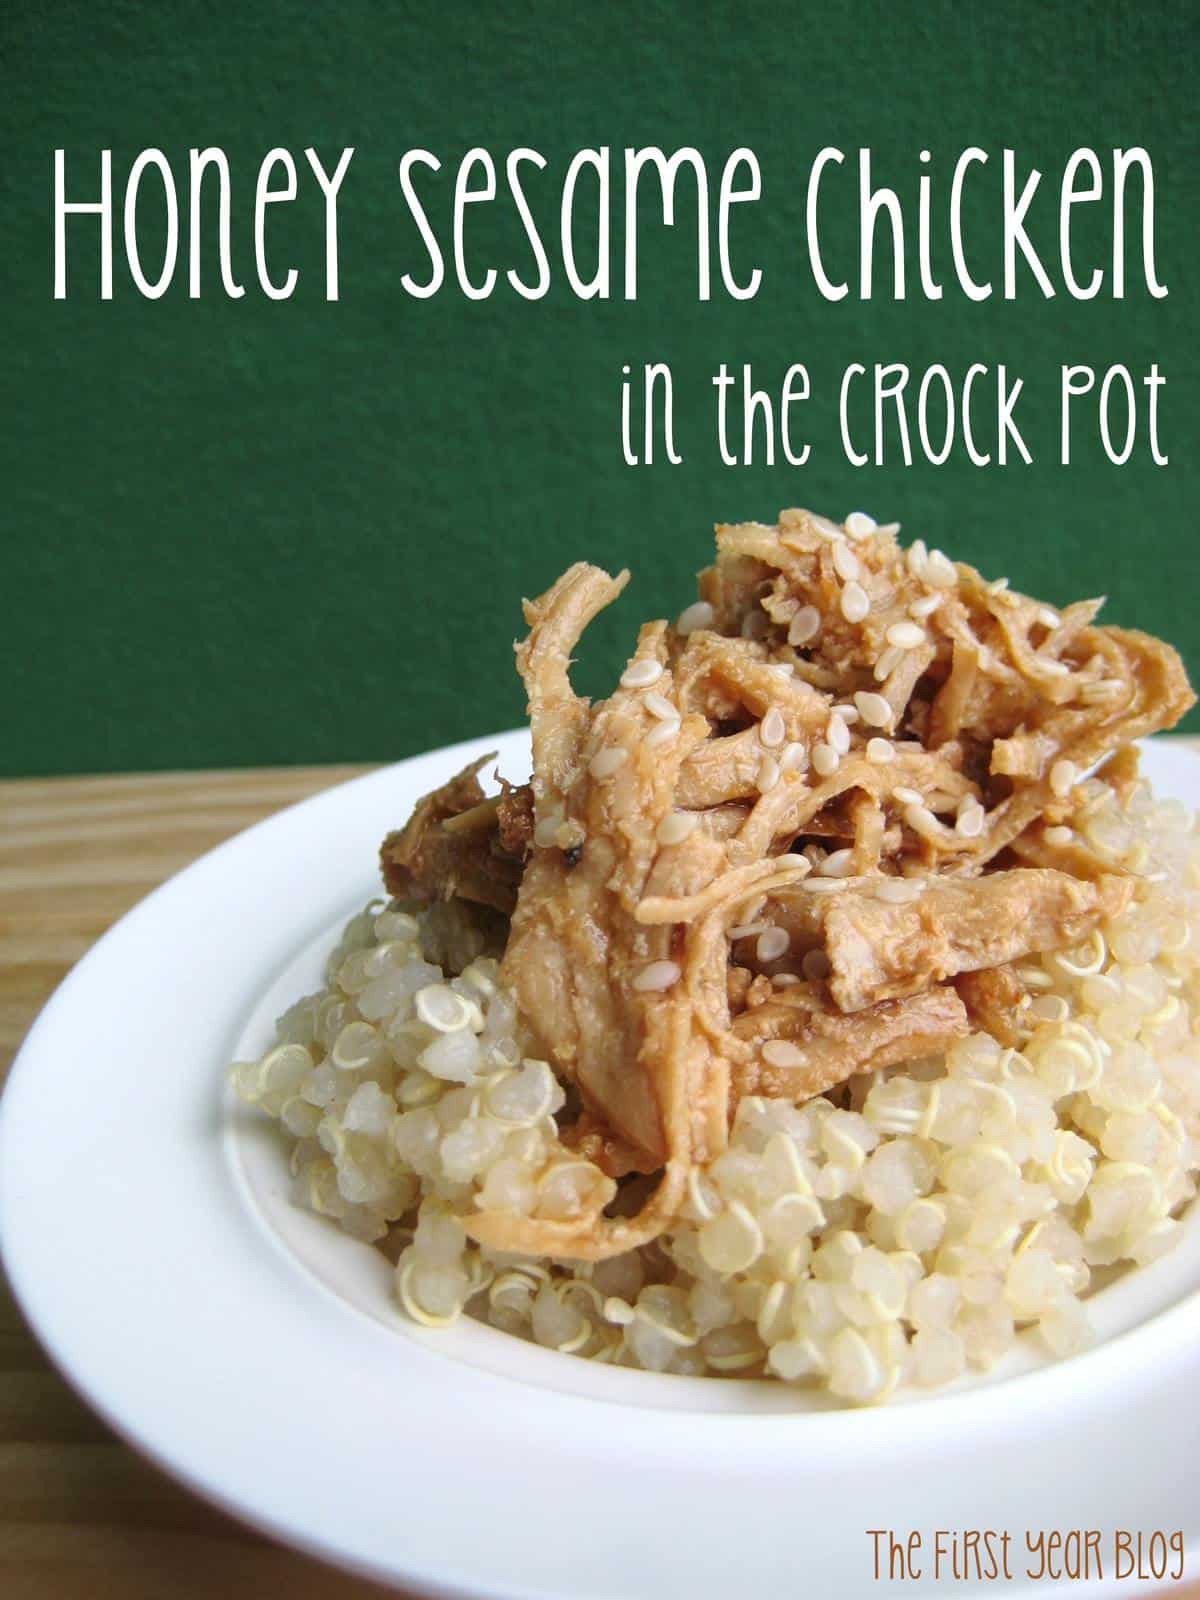 Honey Sesame Chicken in the Crock Pot - The First Year Blog #HoneySesameChicken #CrockPot